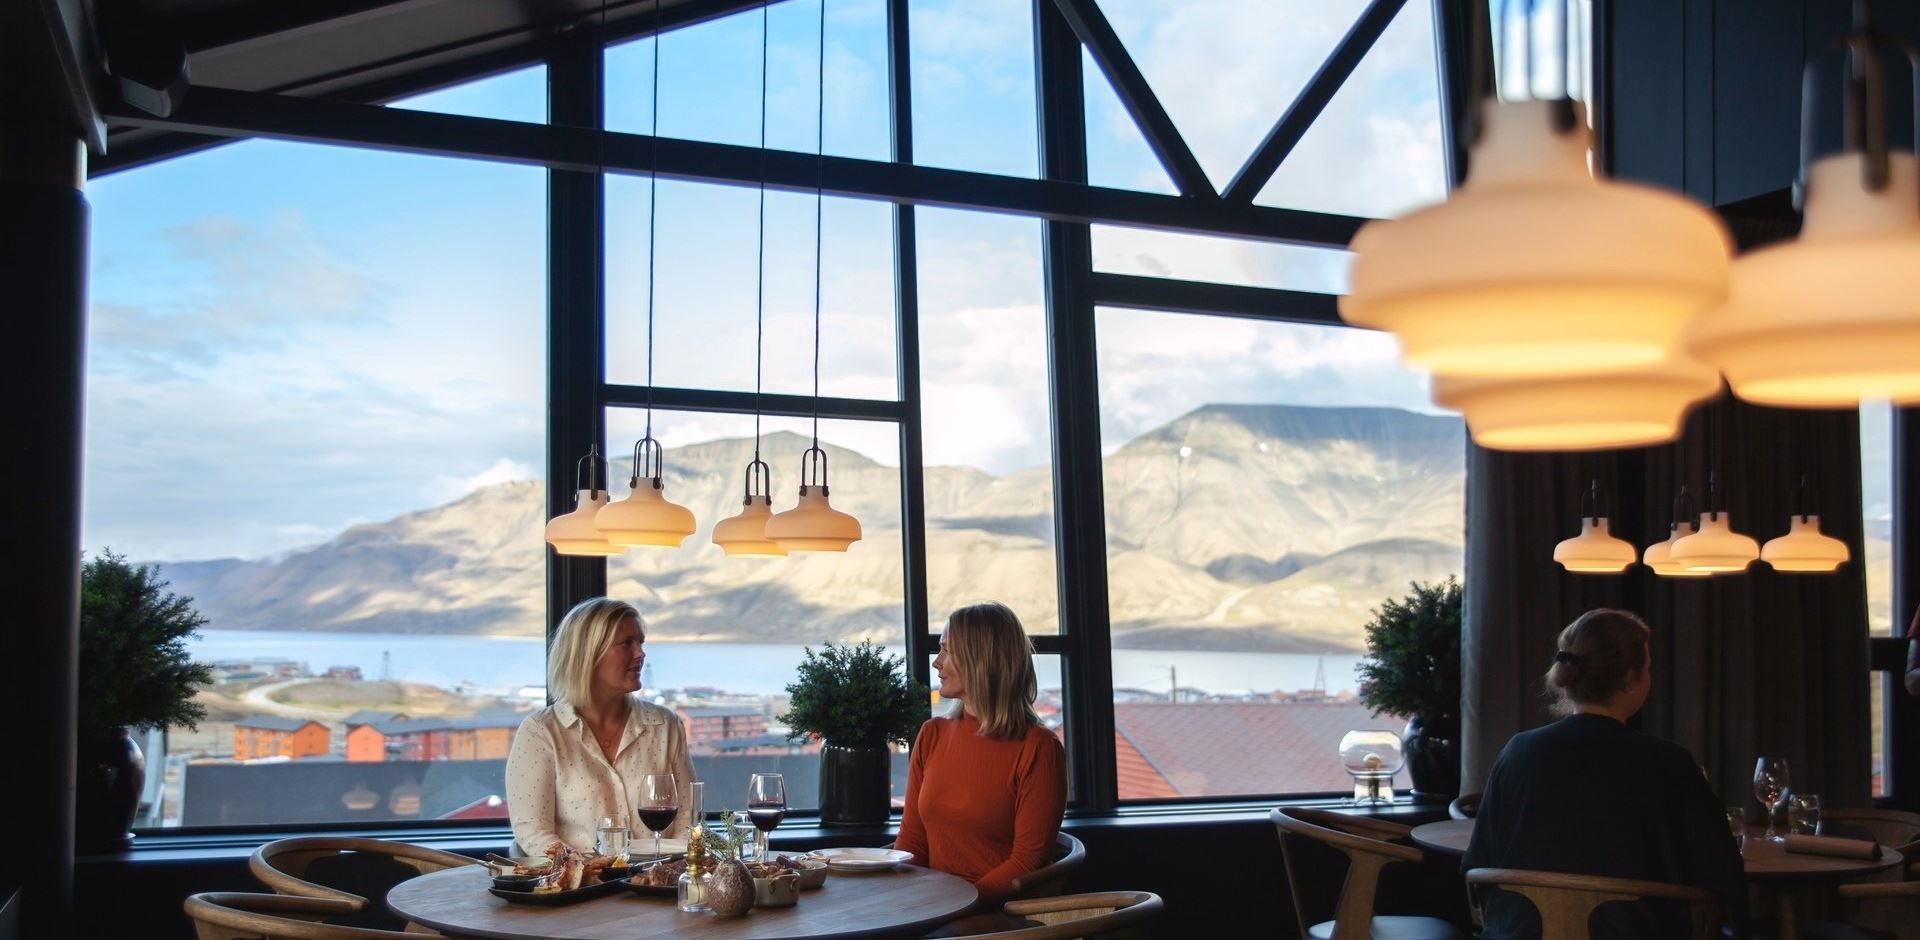 to kvinder i restauranten med udsigt til hvidklædte bjerge